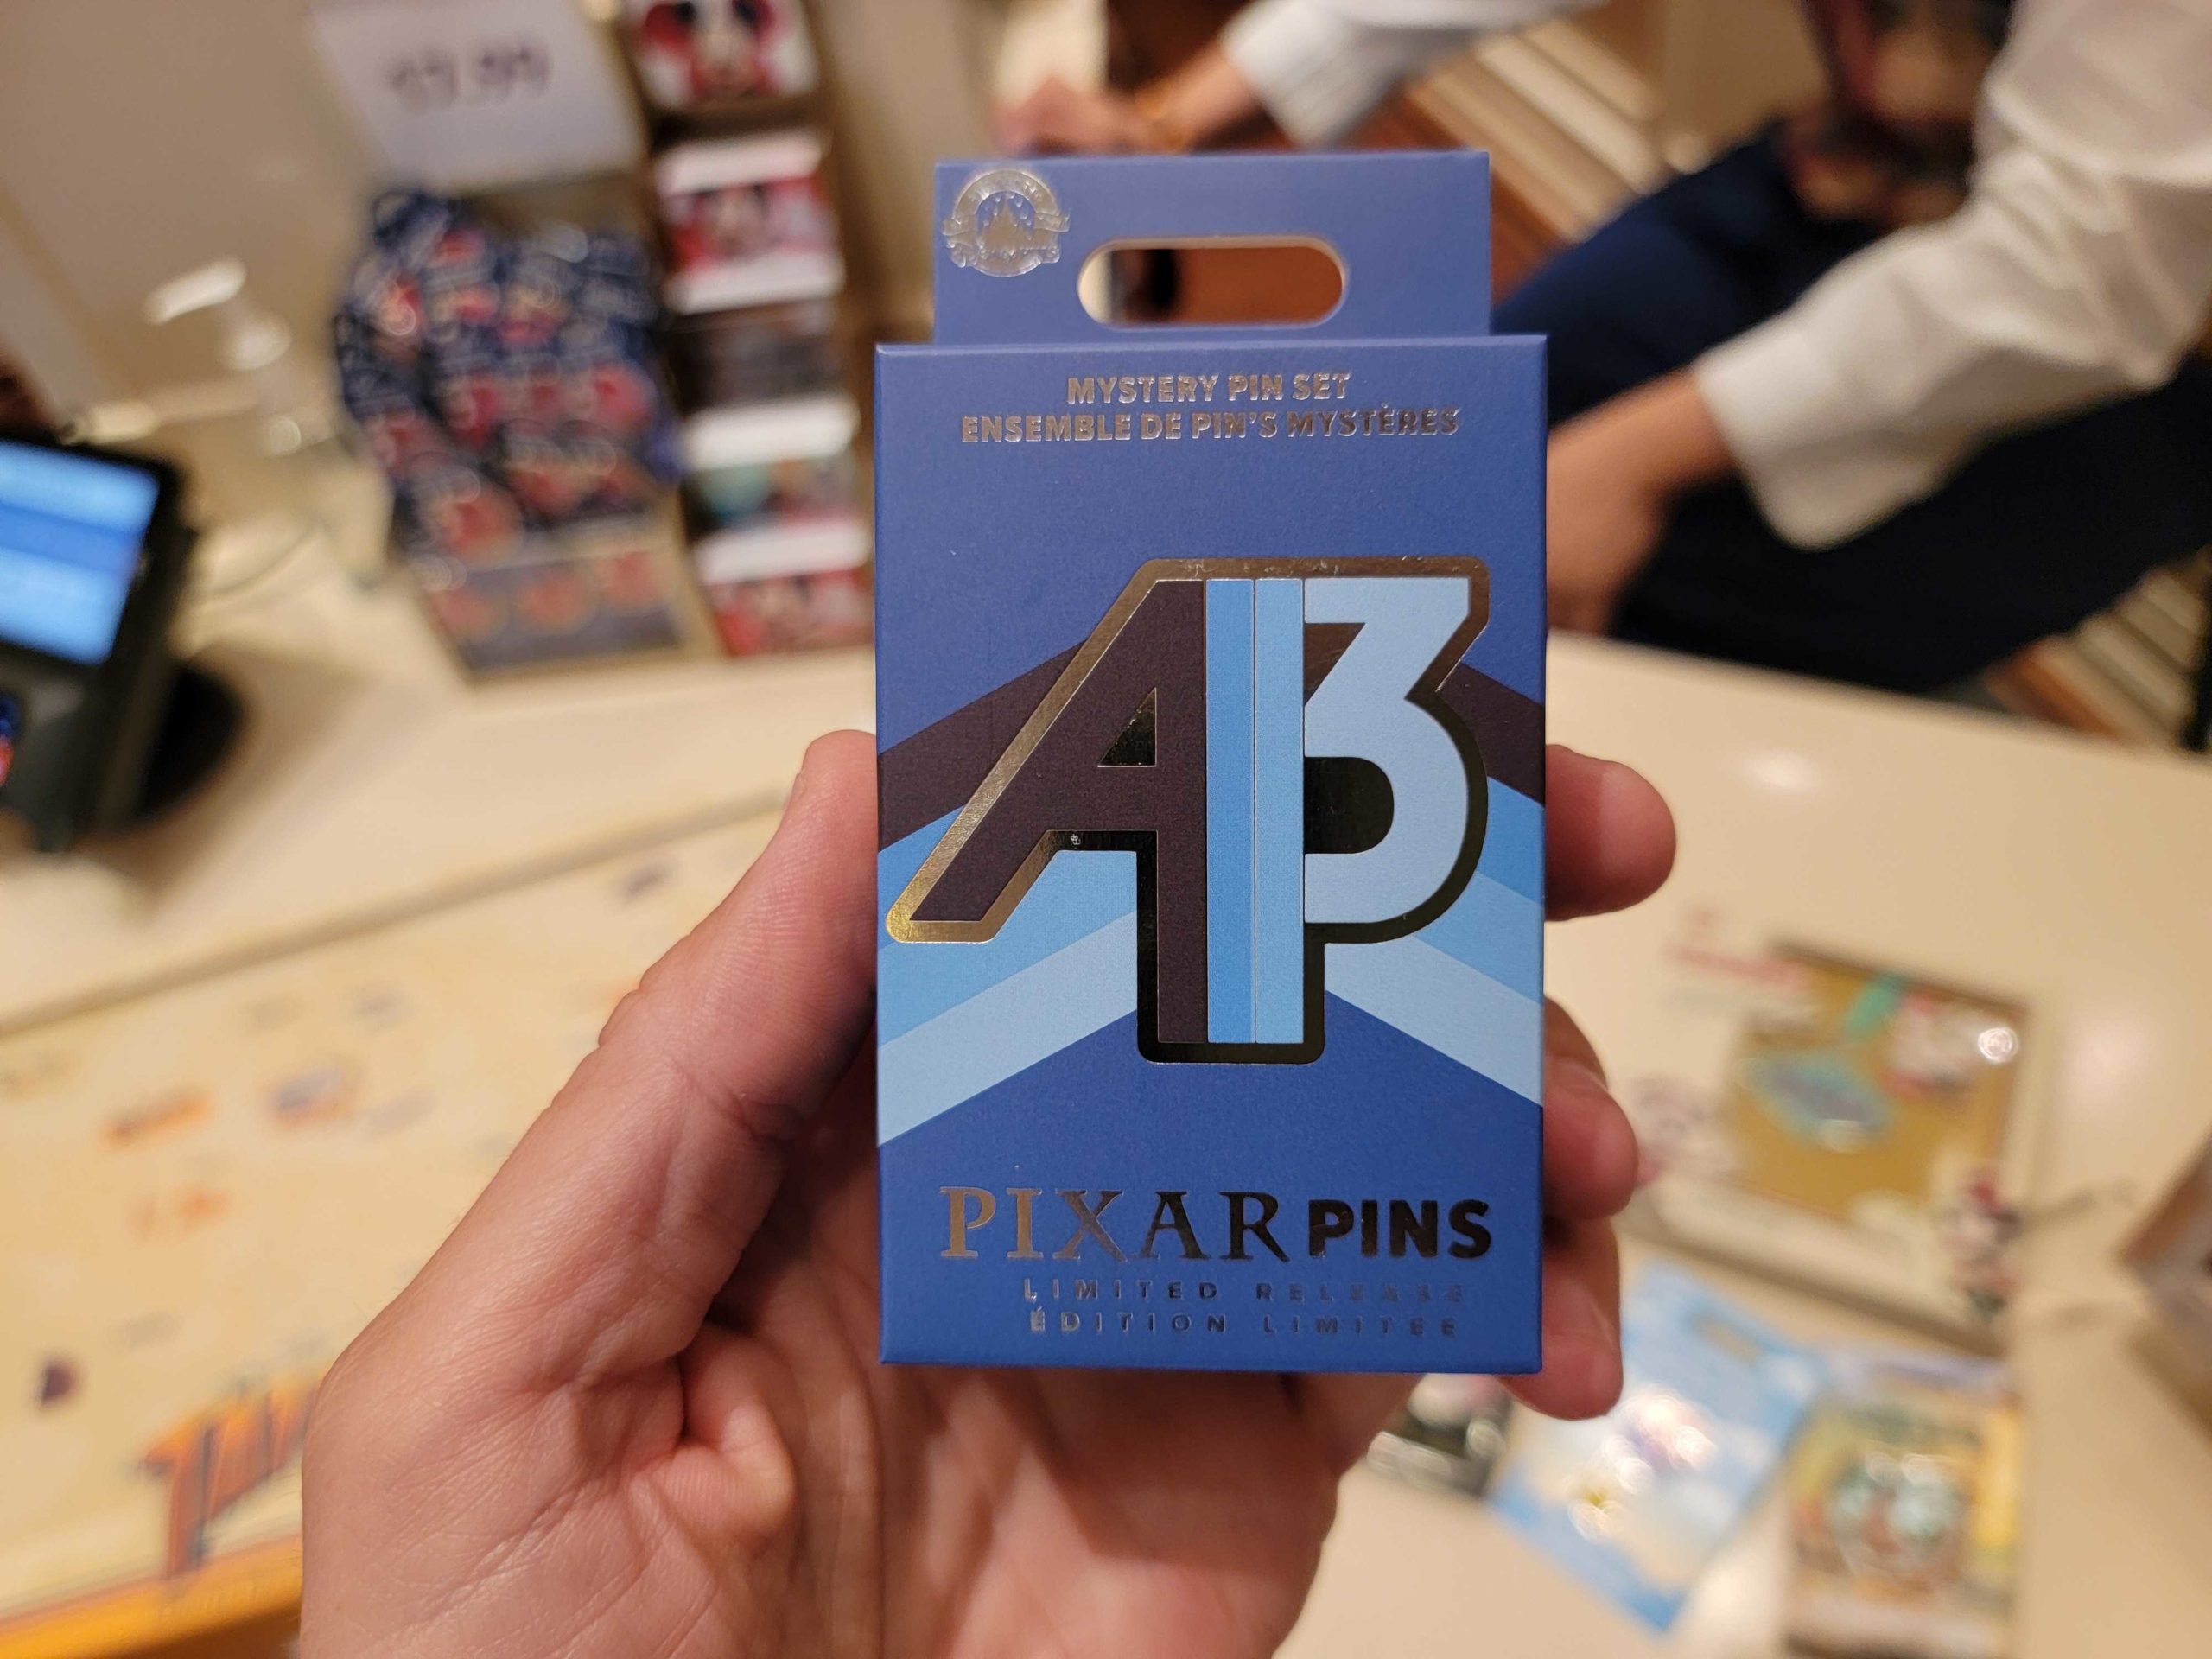 Pixar Pins Mystery LE Pin set box